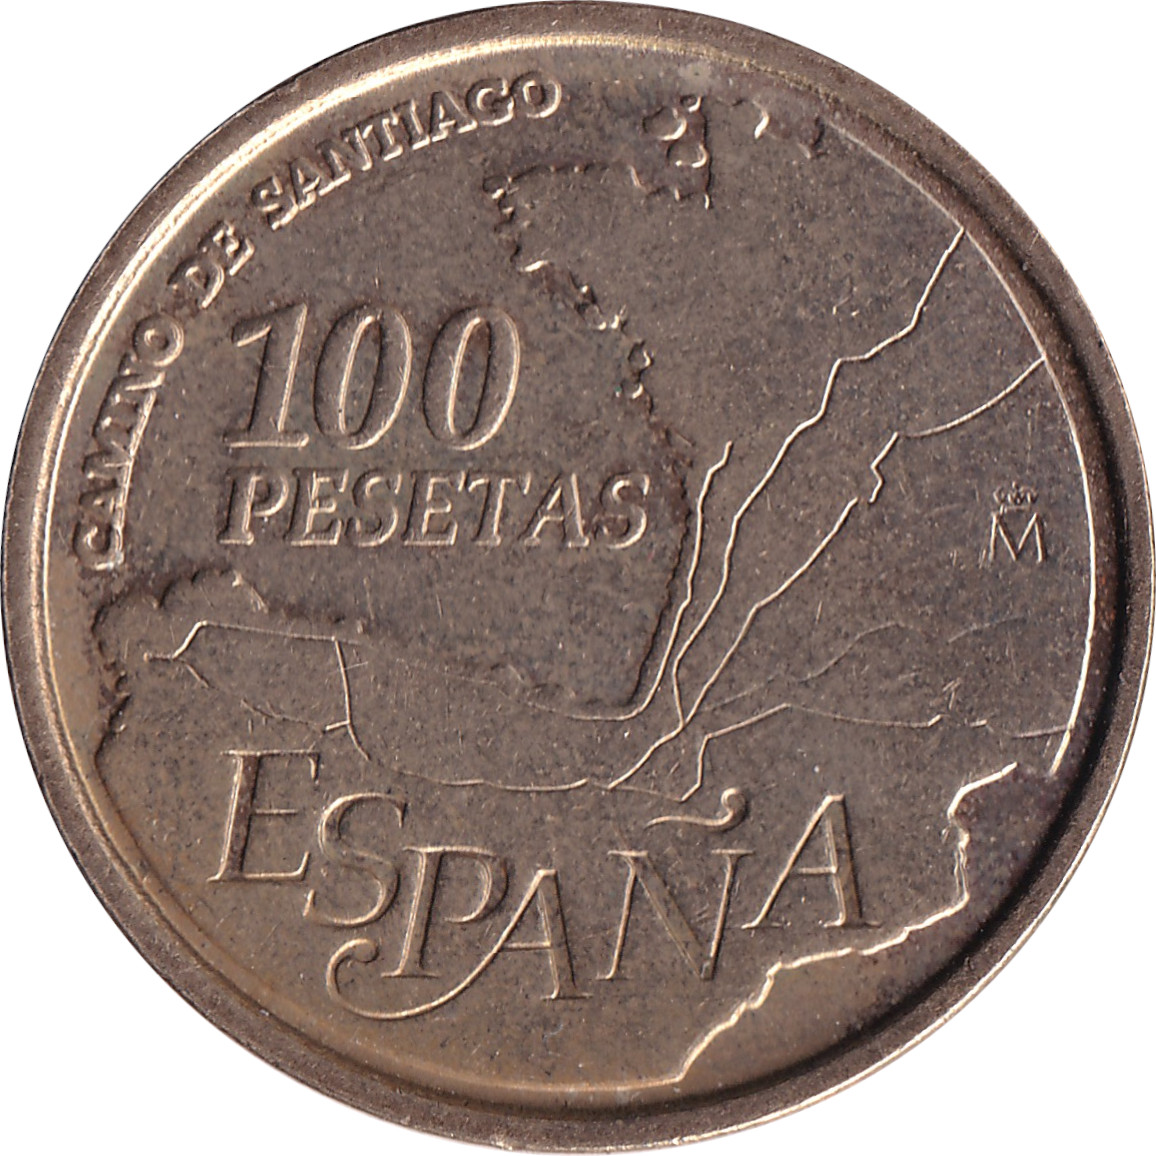 100 pesetas - Chemin de Santiago